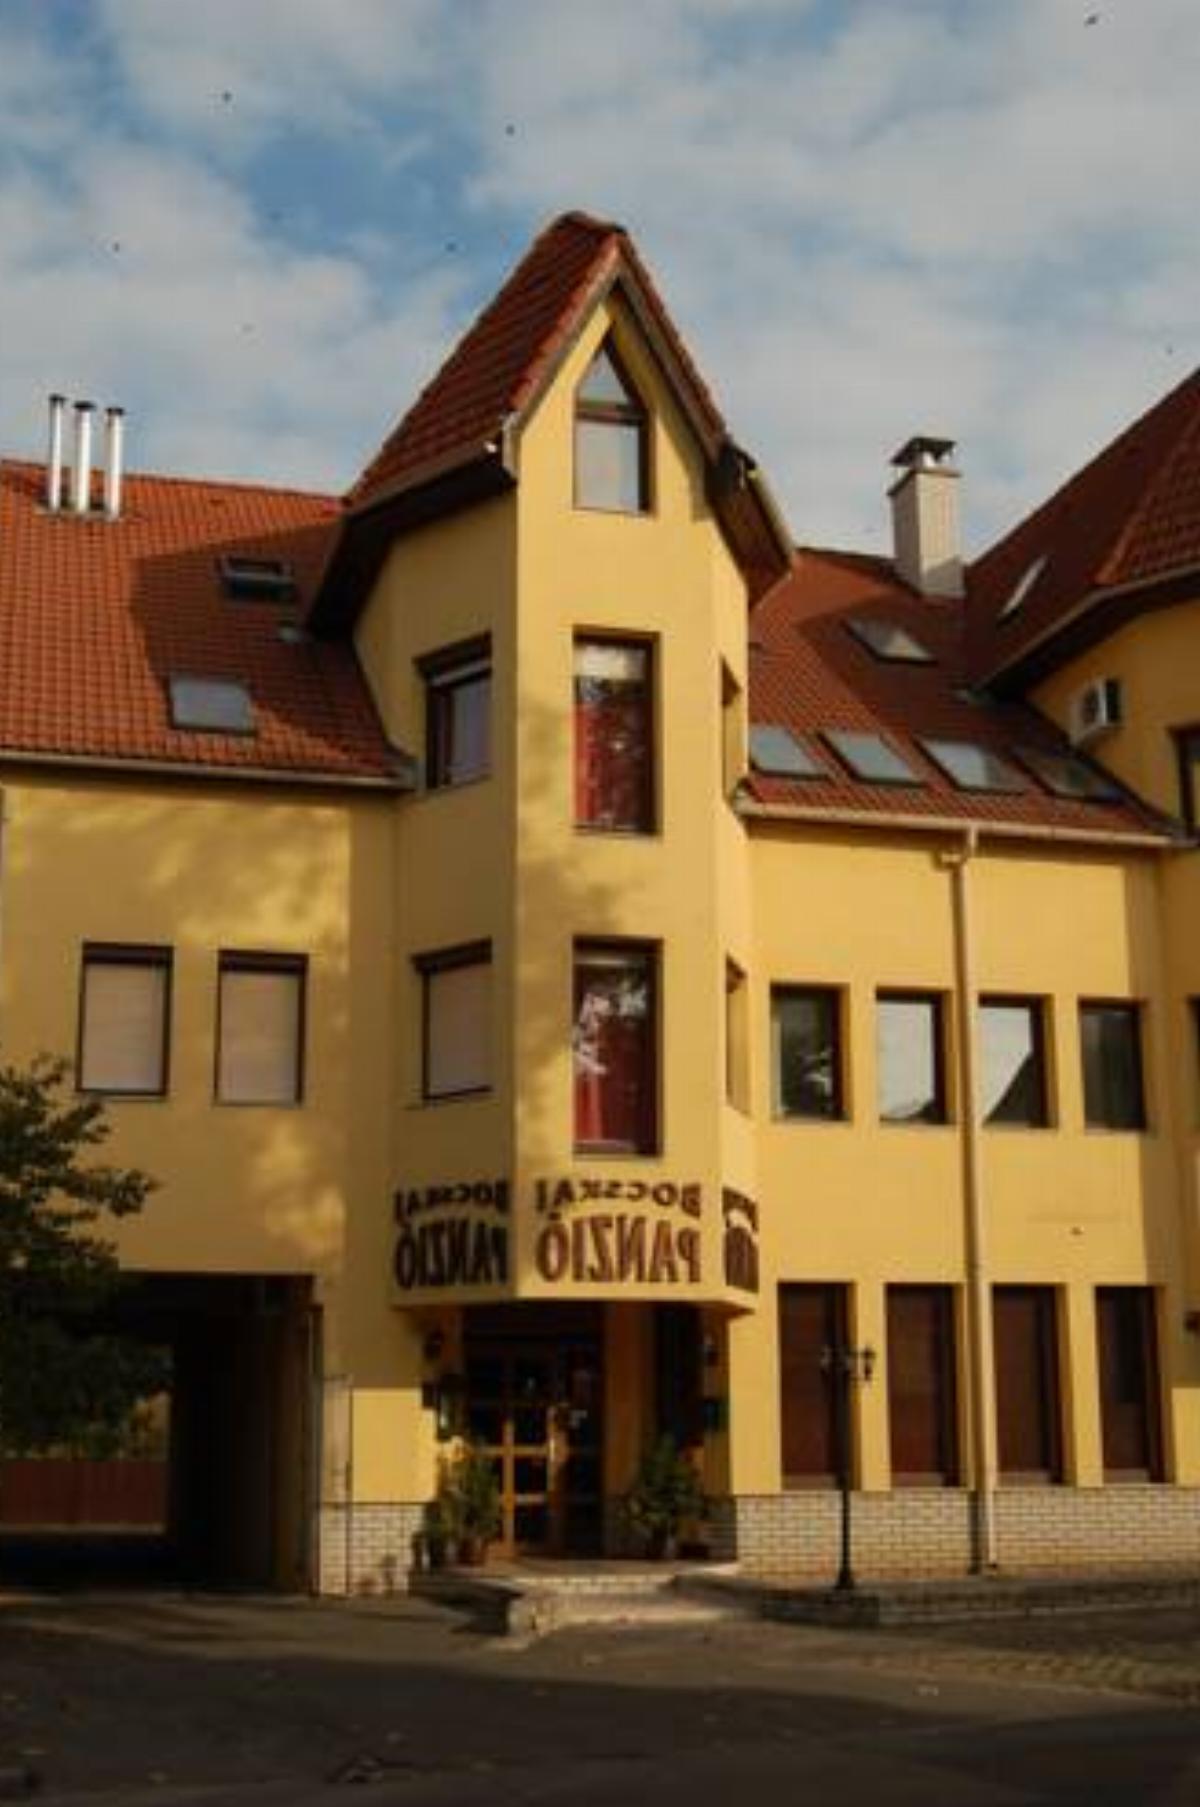 Bocskai Panzió Hotel Nyíregyháza Hungary